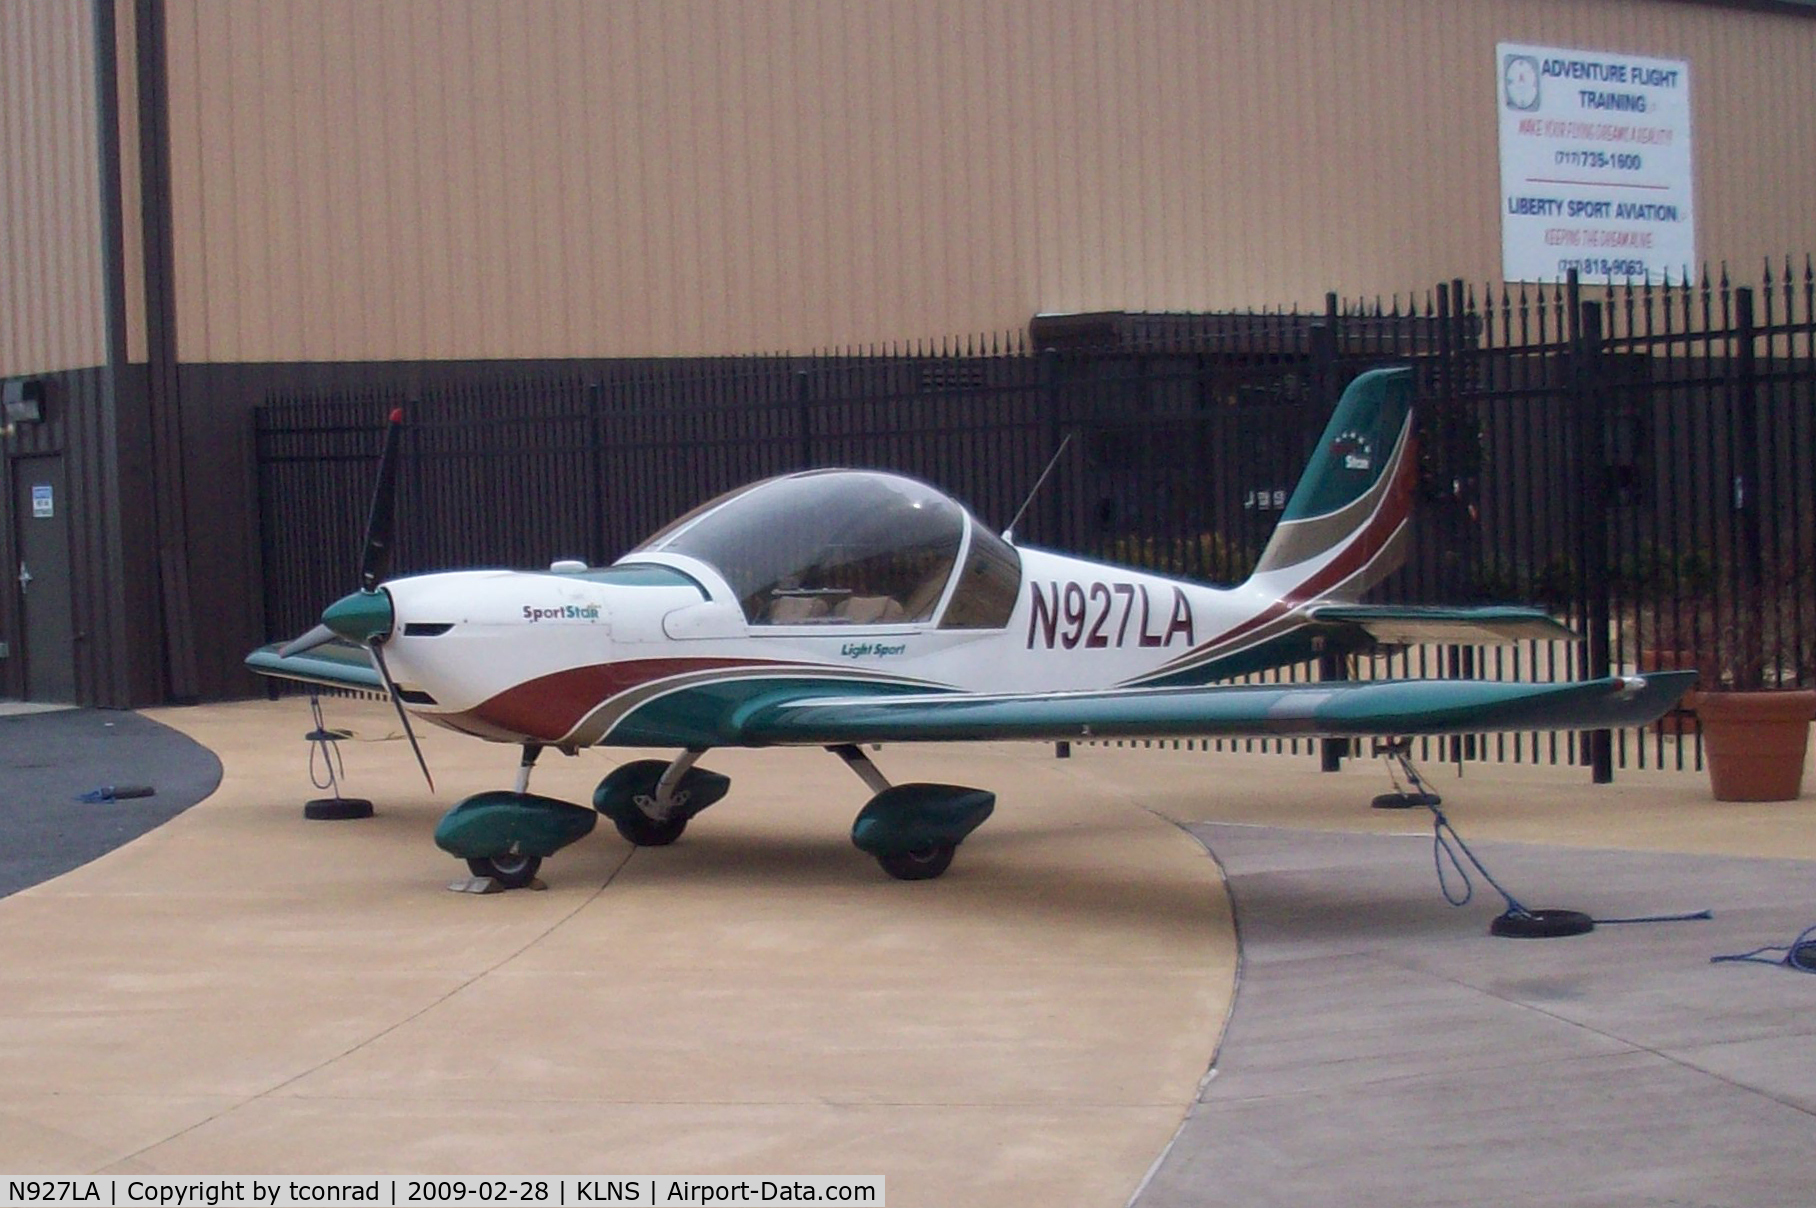 N927LA, 2007 Evektor-Aerotechnik Sportstar Plus C/N 20070927, at Lancaster